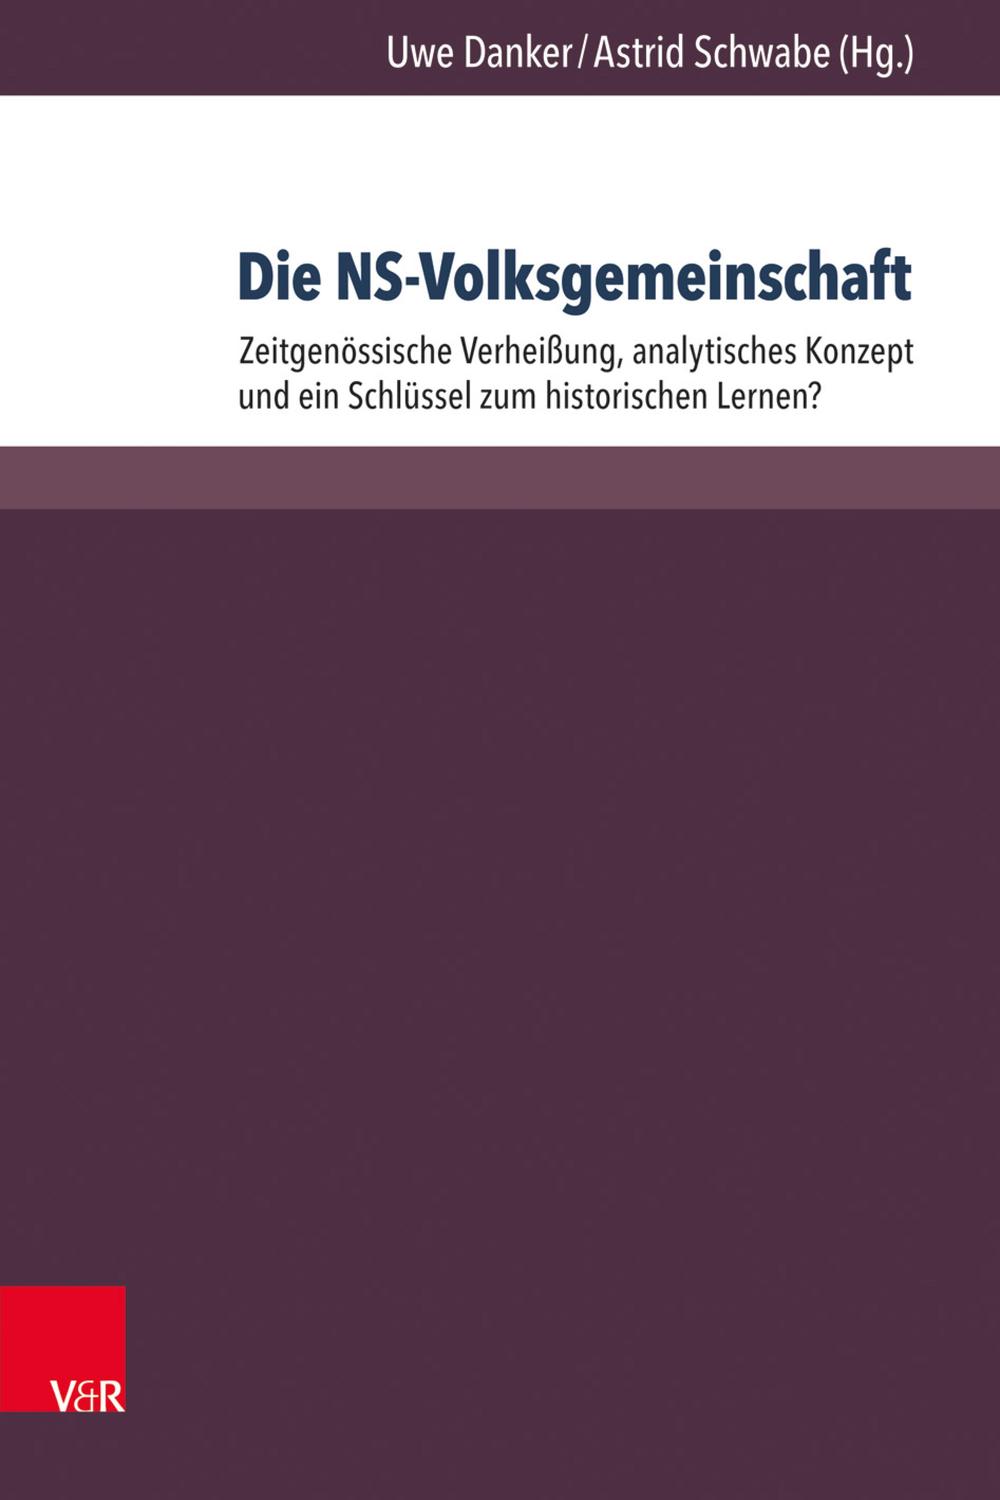 Die NS-Volksgemeinschaft - Uwe Danker, Astrid Schwabe